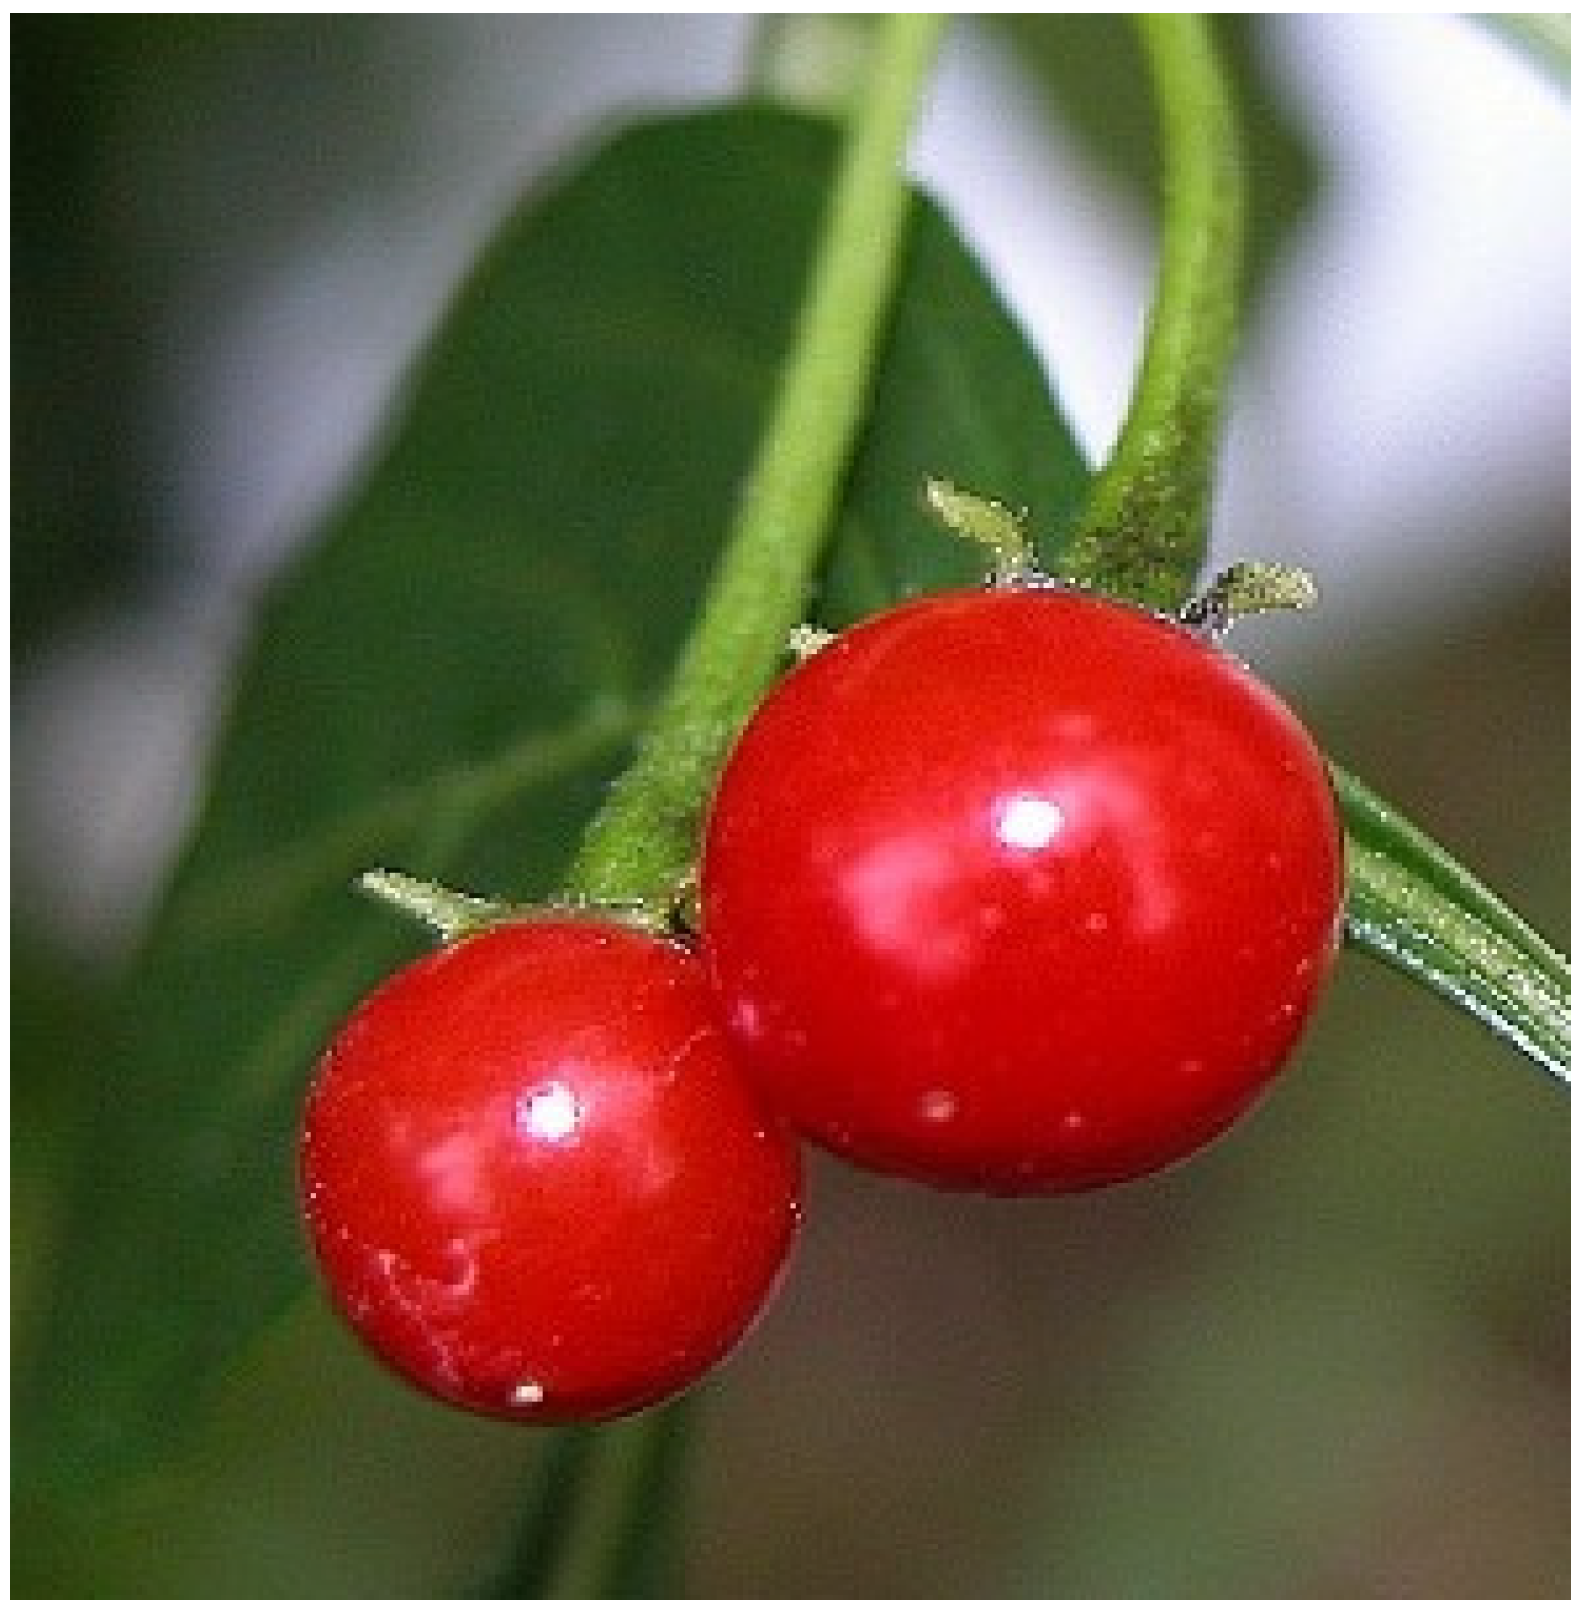 Solanum sisymbriifolium Lam., Arrebenta-cavalo (World flora) - Pl